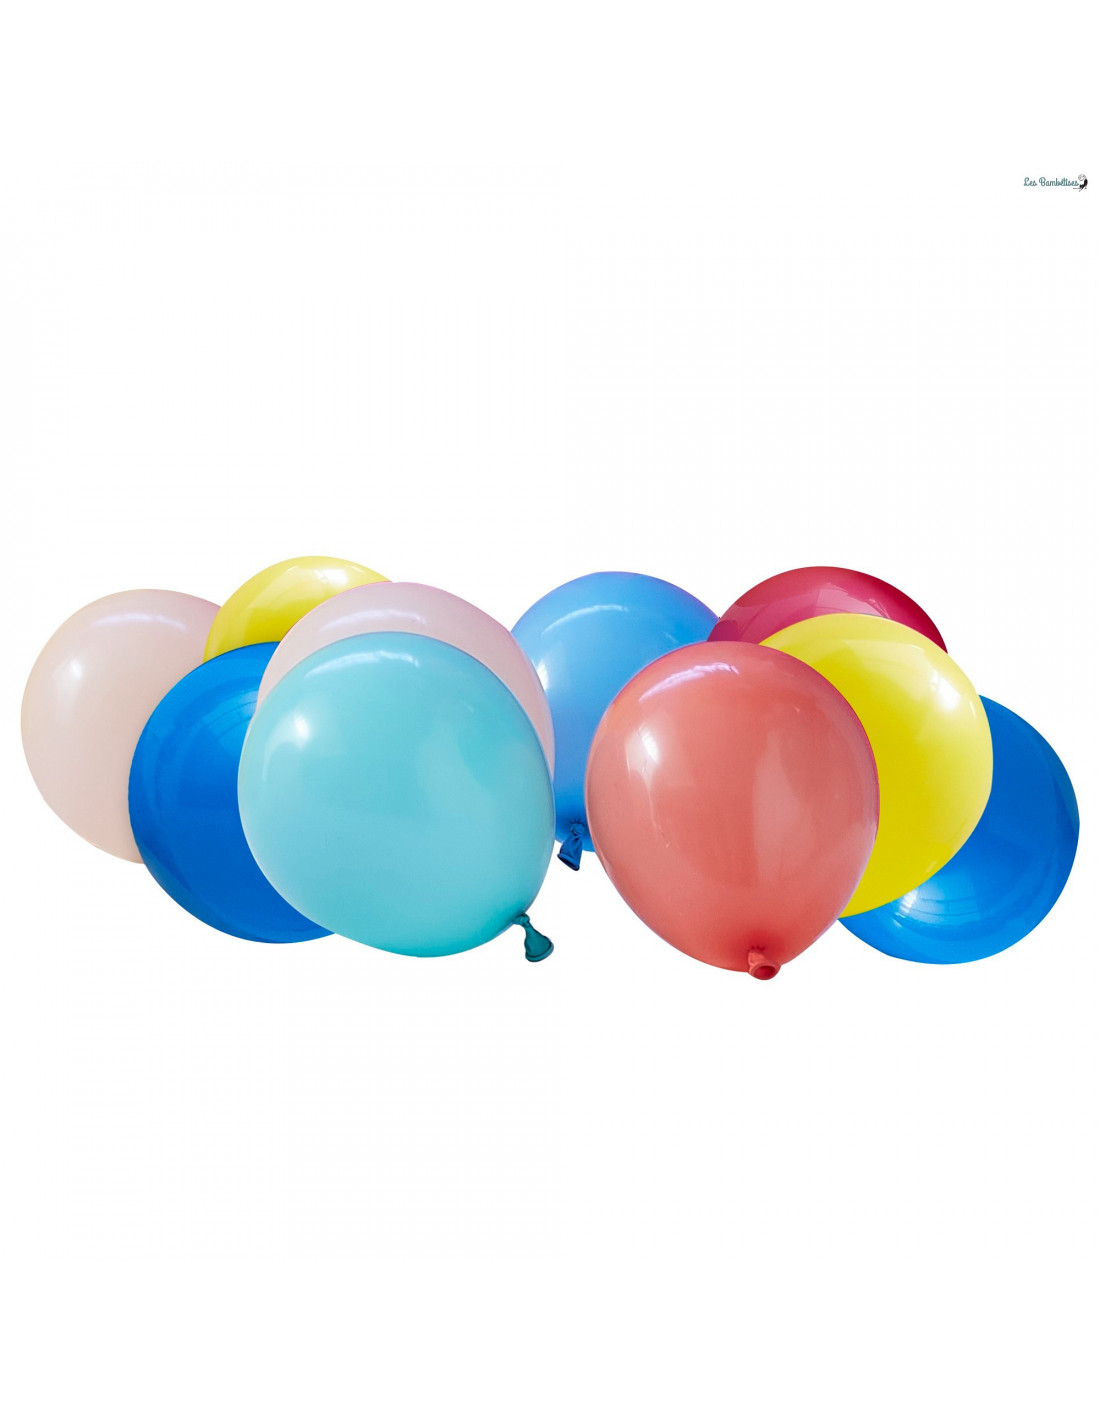 Ballon Alu Chiffre 3 Arc-en-ciel 36 cm gonflage air